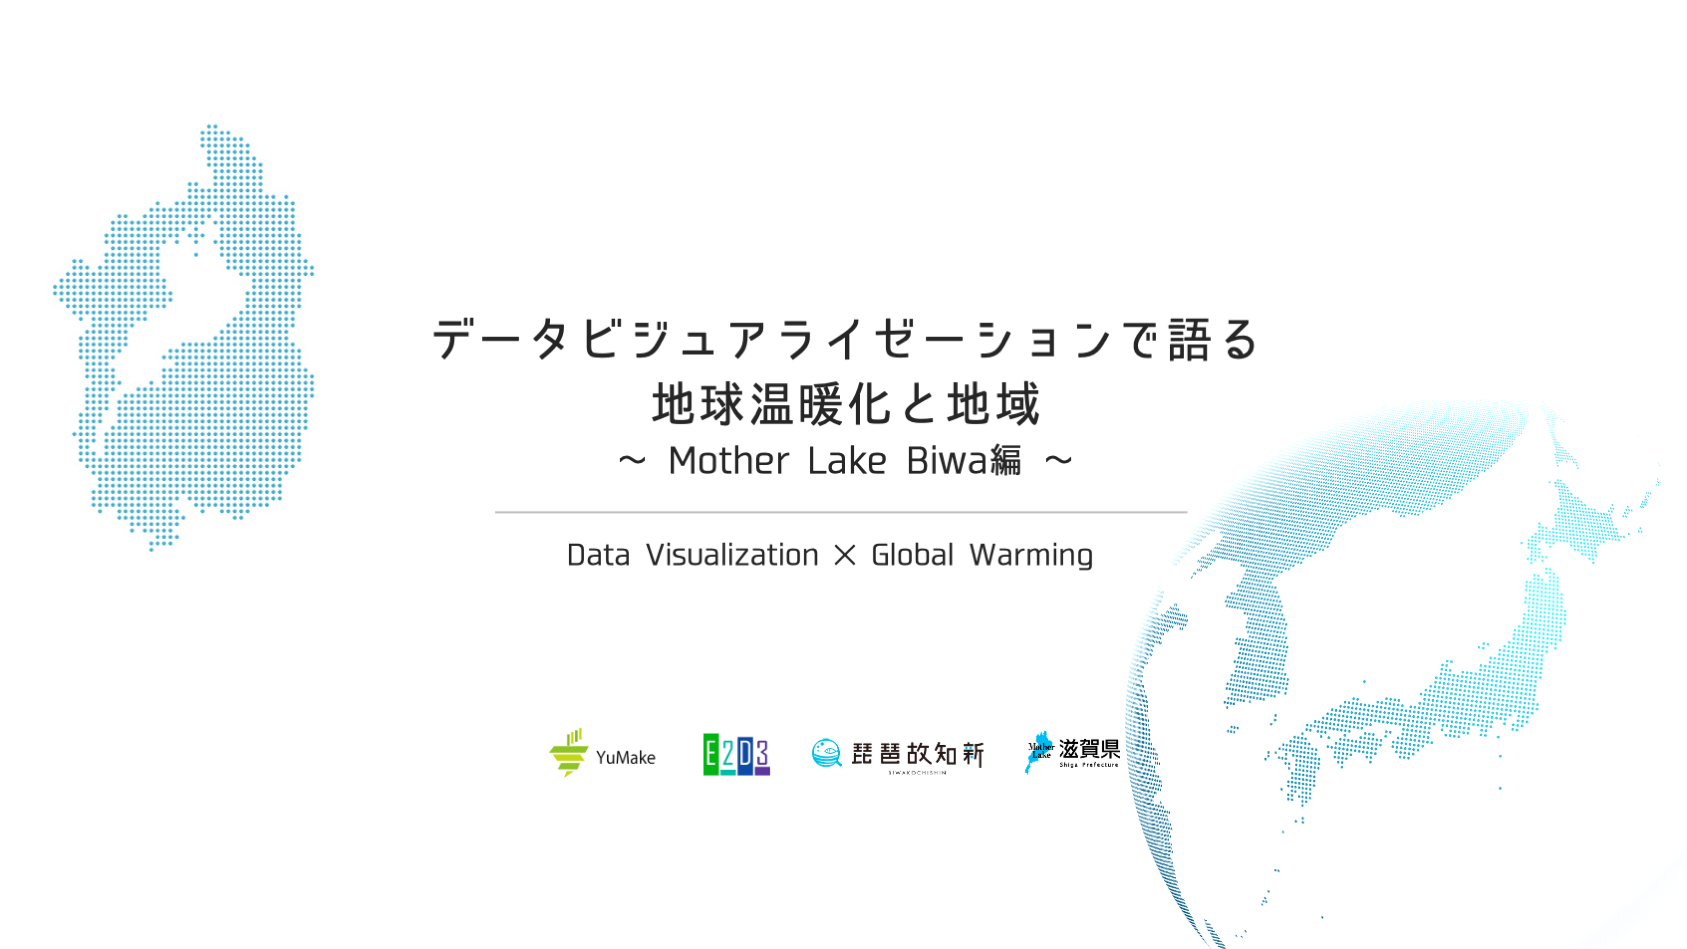 データビジュアライゼーションで語る 地球温暖化と地域 〜 Mother Lake Biwa編 〜　Code for Japan Summit 2020 で開催